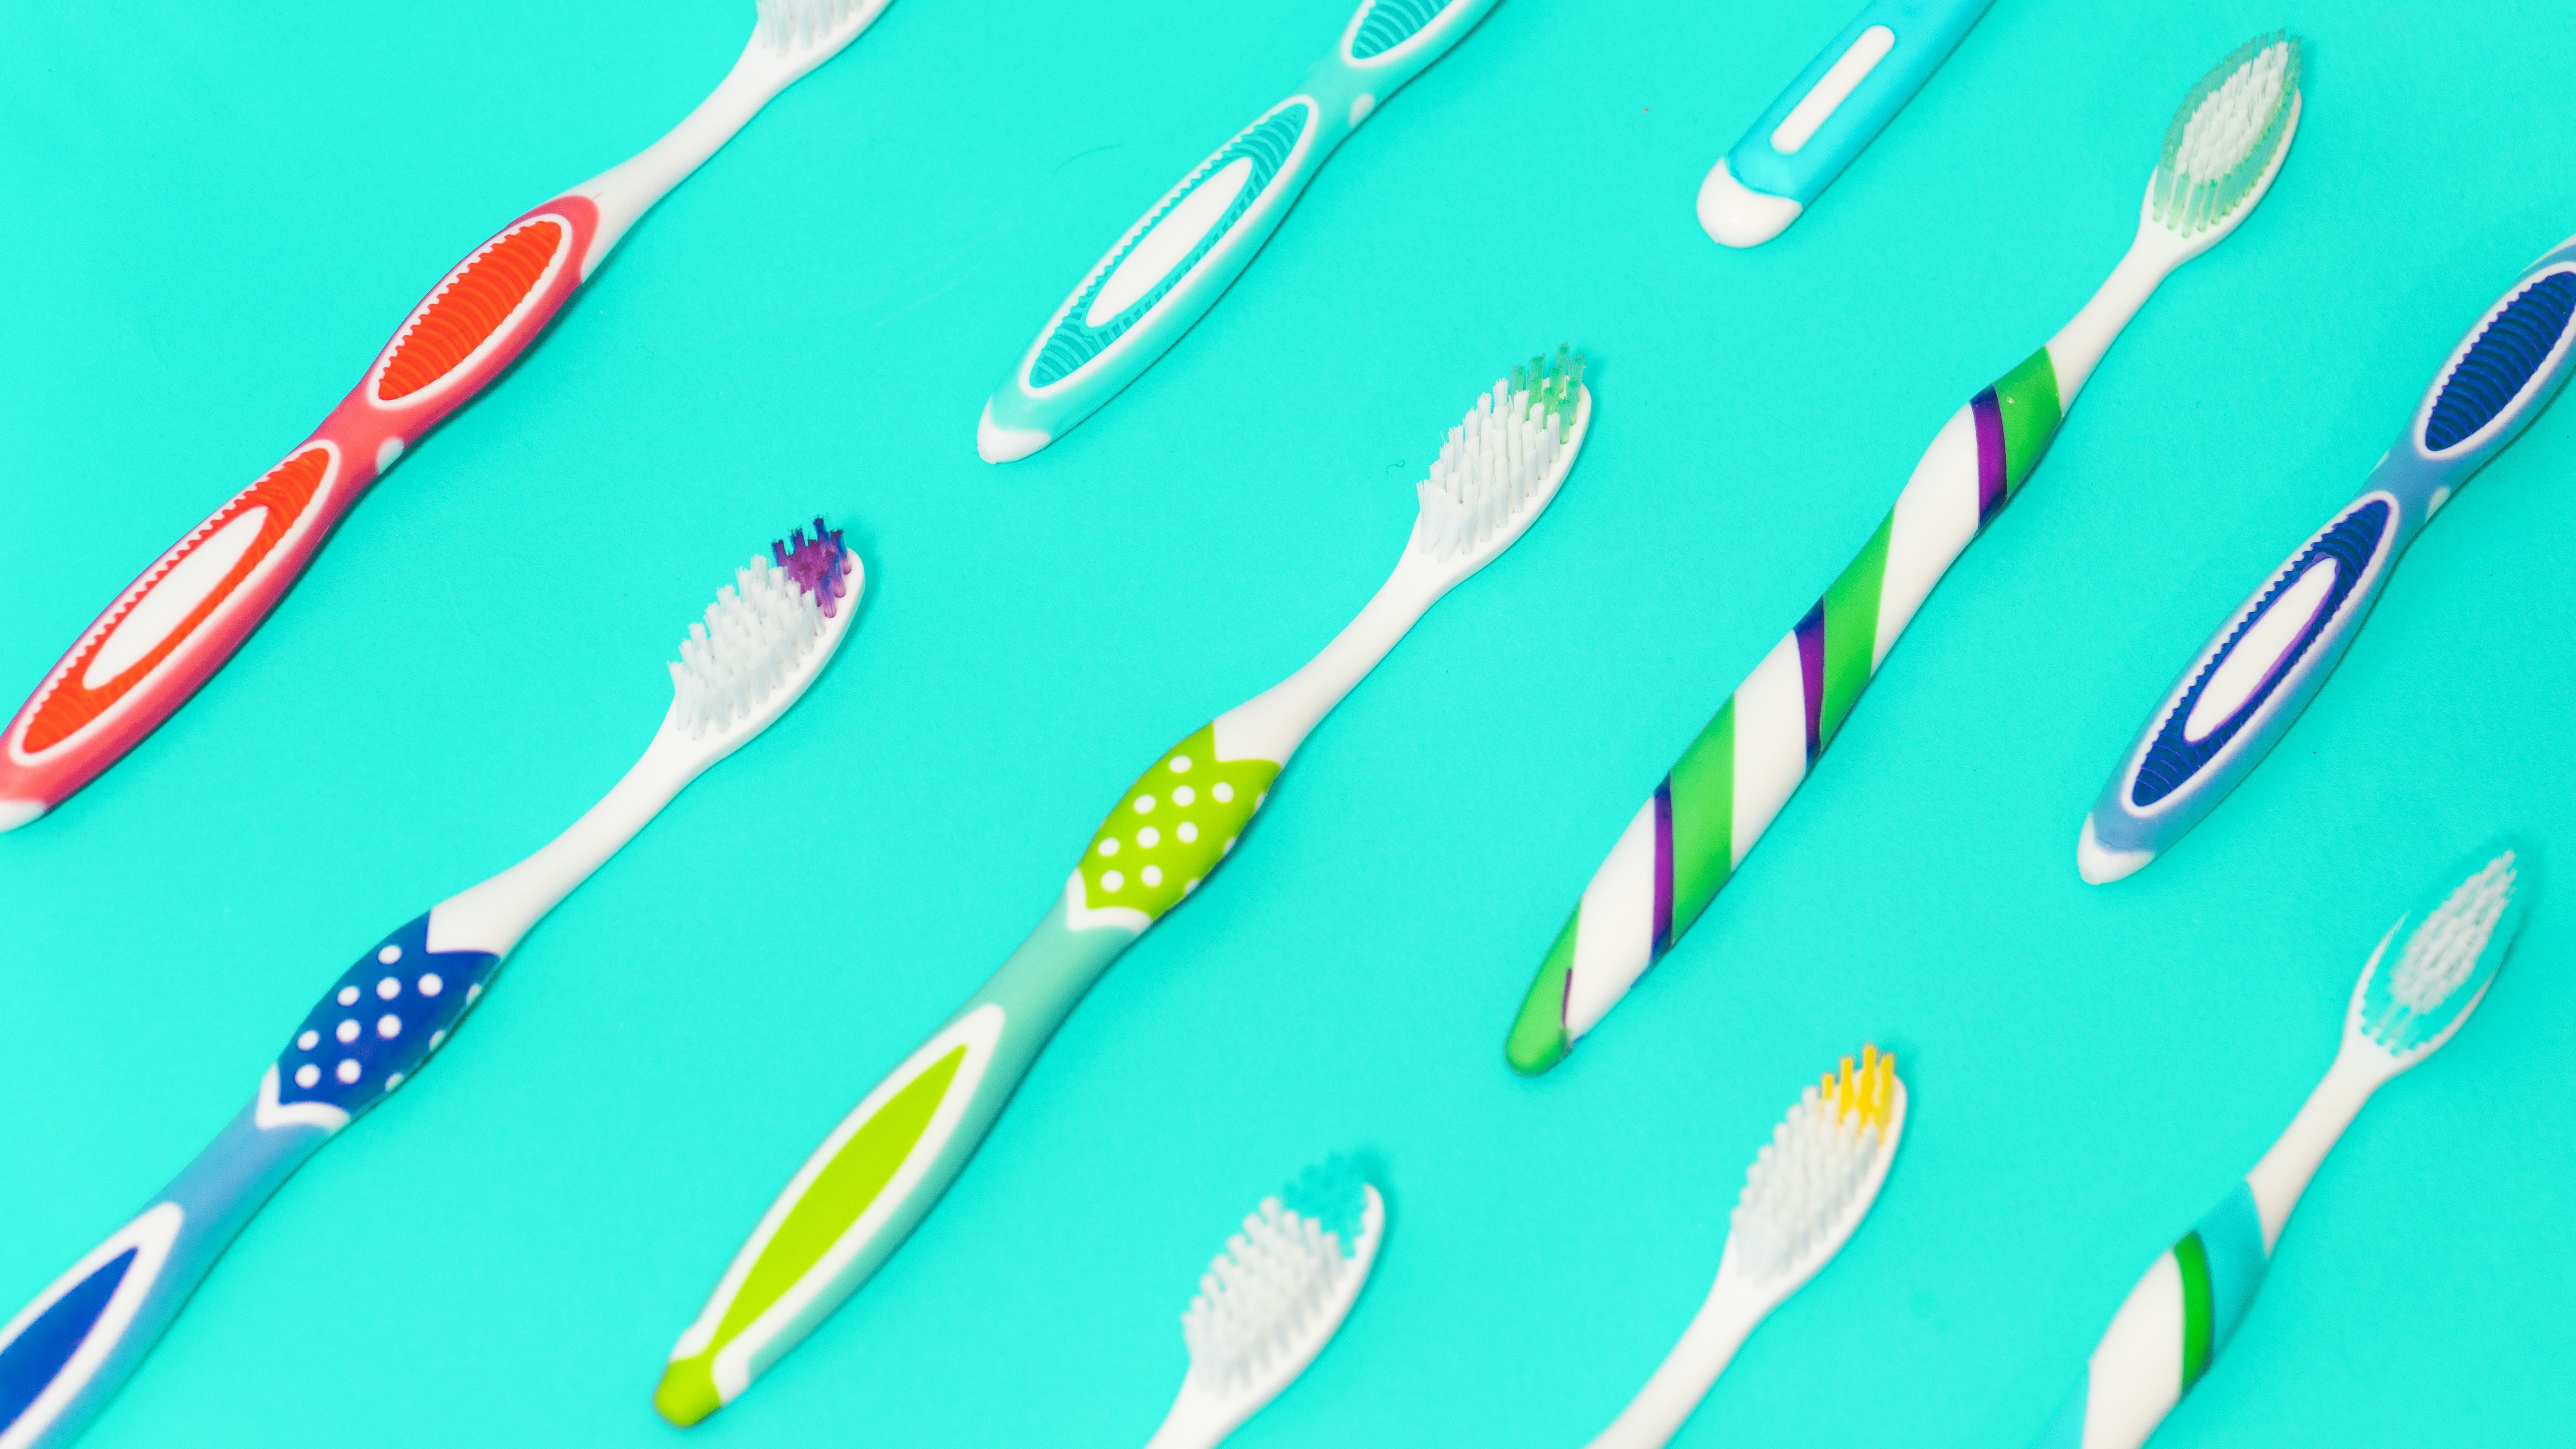 Fehler beim Zähne putzen: Falsche Zahnbürste benutzen